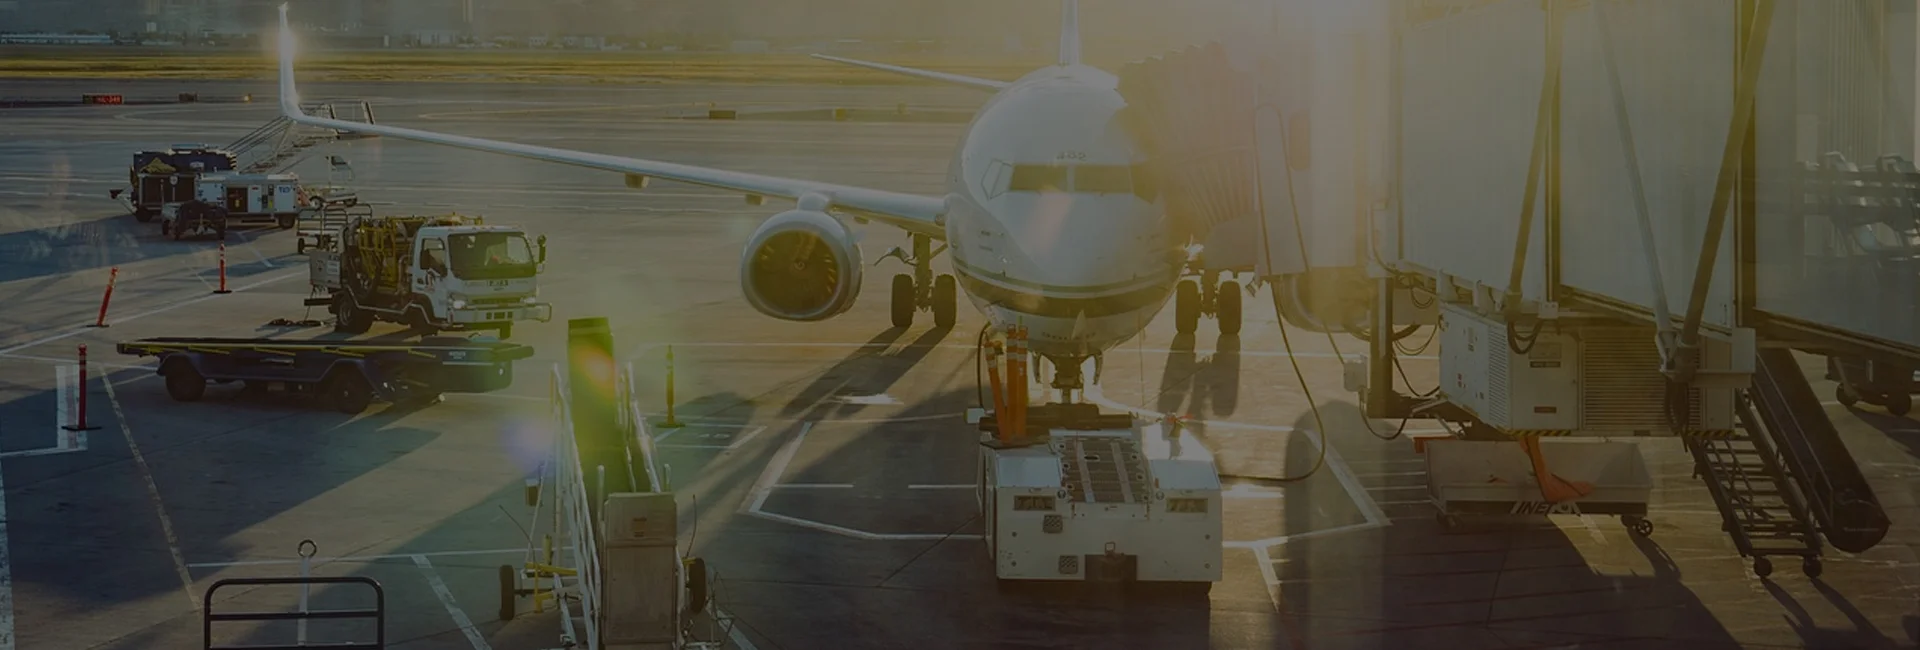 IATA Expanding Operational Data Analytics Capabilities